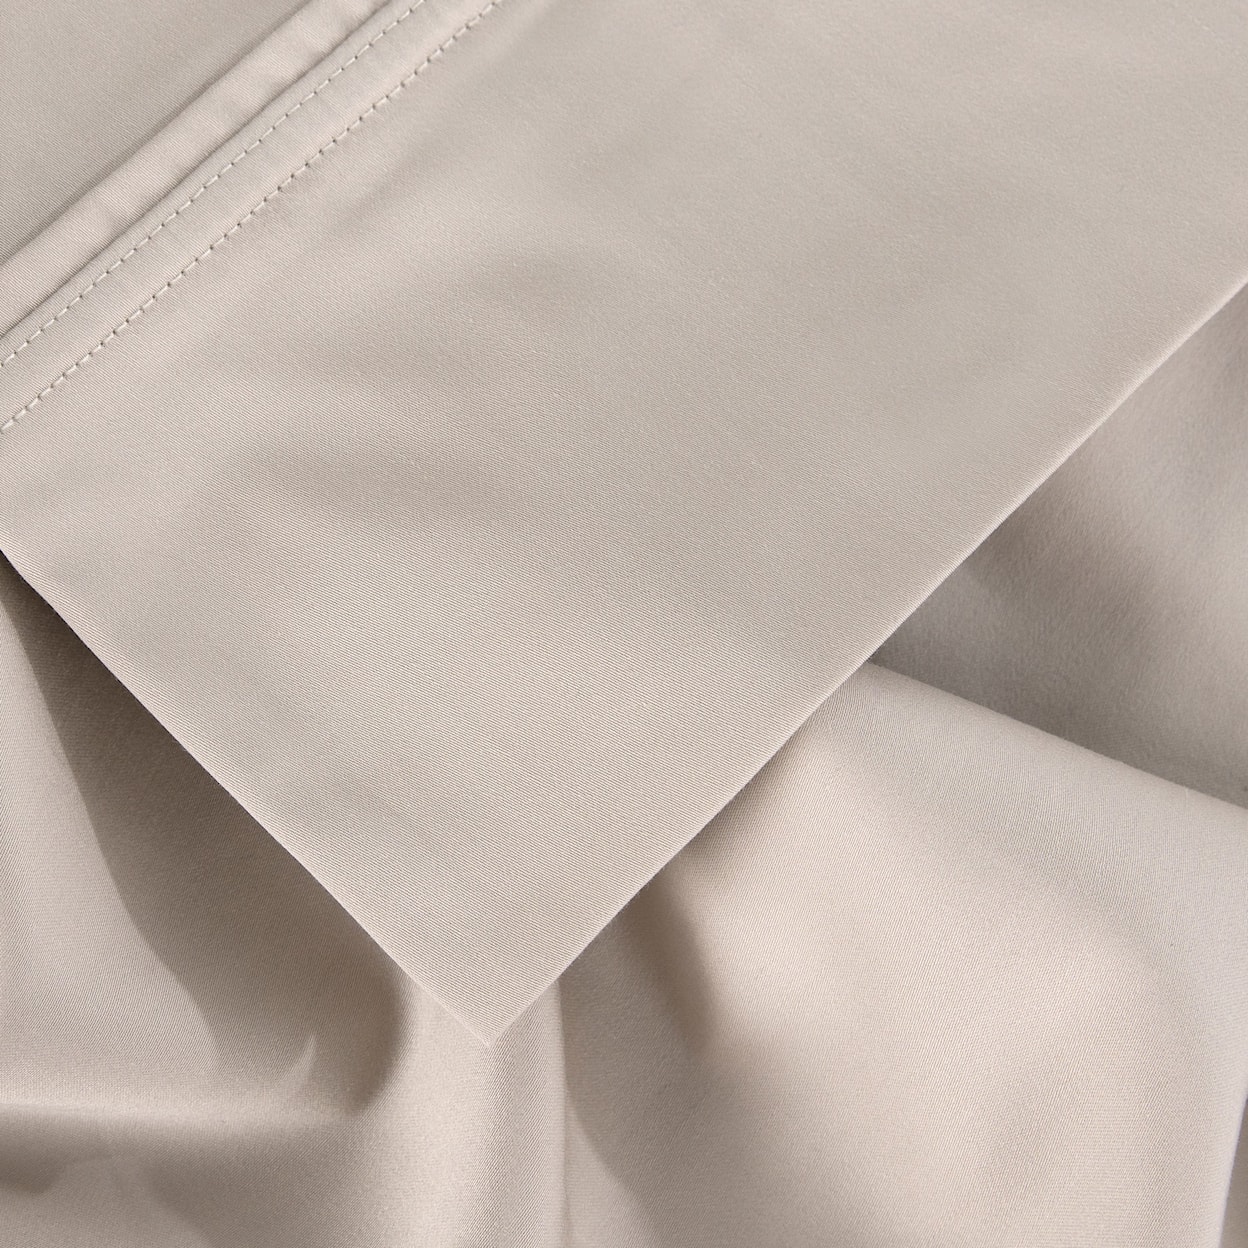 Bedgear Hyper Cotton Sheets Sheet Set, Beige, Twin